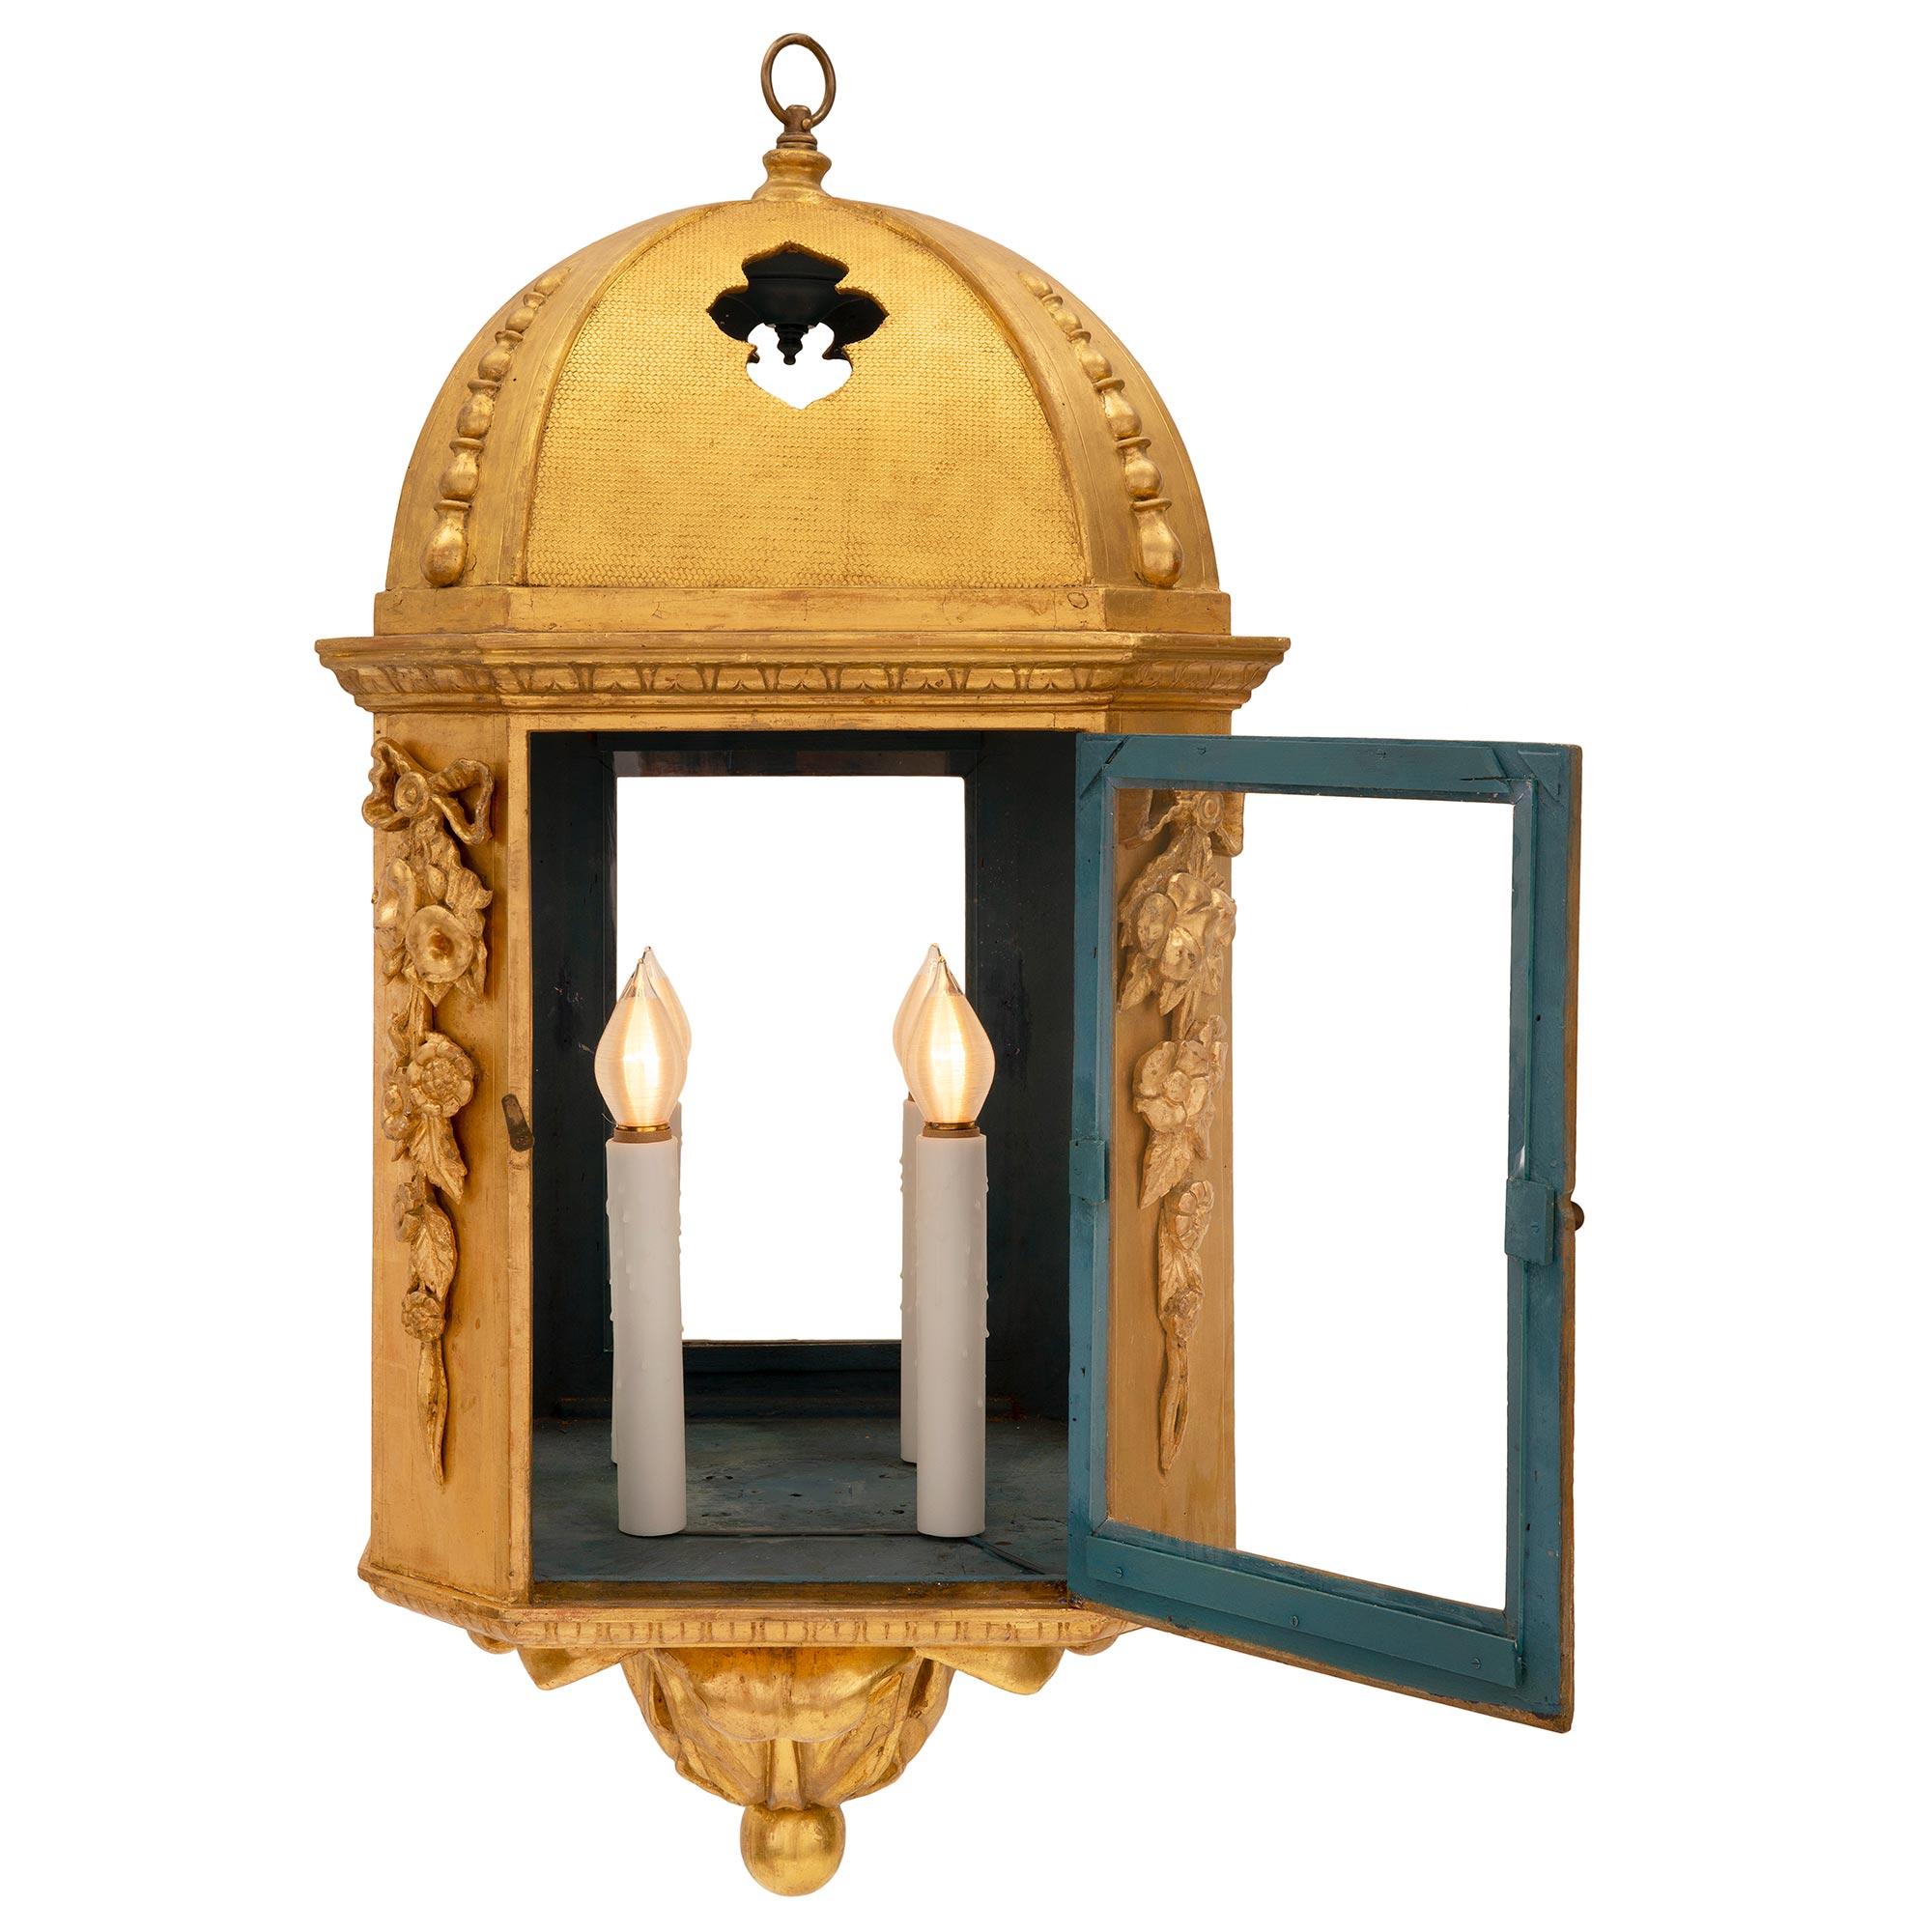 Paire de lanternes en bois doré de style baroque italien du 18e siècle, remarquables et très décoratives. Chaque lanterne octogonale est centrée par un bel épi de faîtage inférieur feuillagé avec une fine boule. Au-dessus des bandes de feuillage